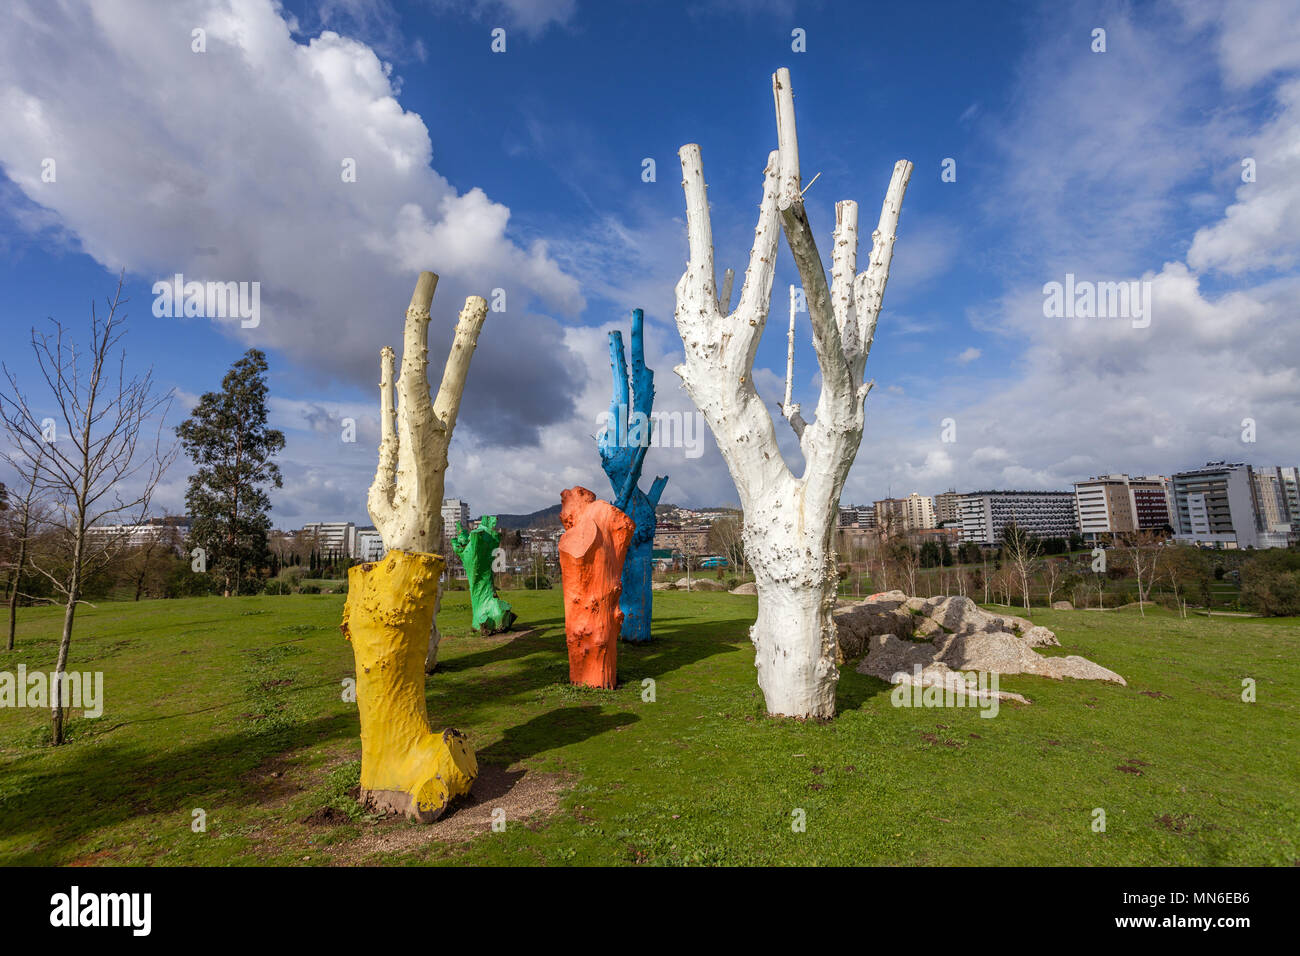 Vila Nova de Famalicao, Portugal. El arte urbano de coloridos árboles muertos pintados en el Parque da Devesa Parque Urbano. Foto de stock